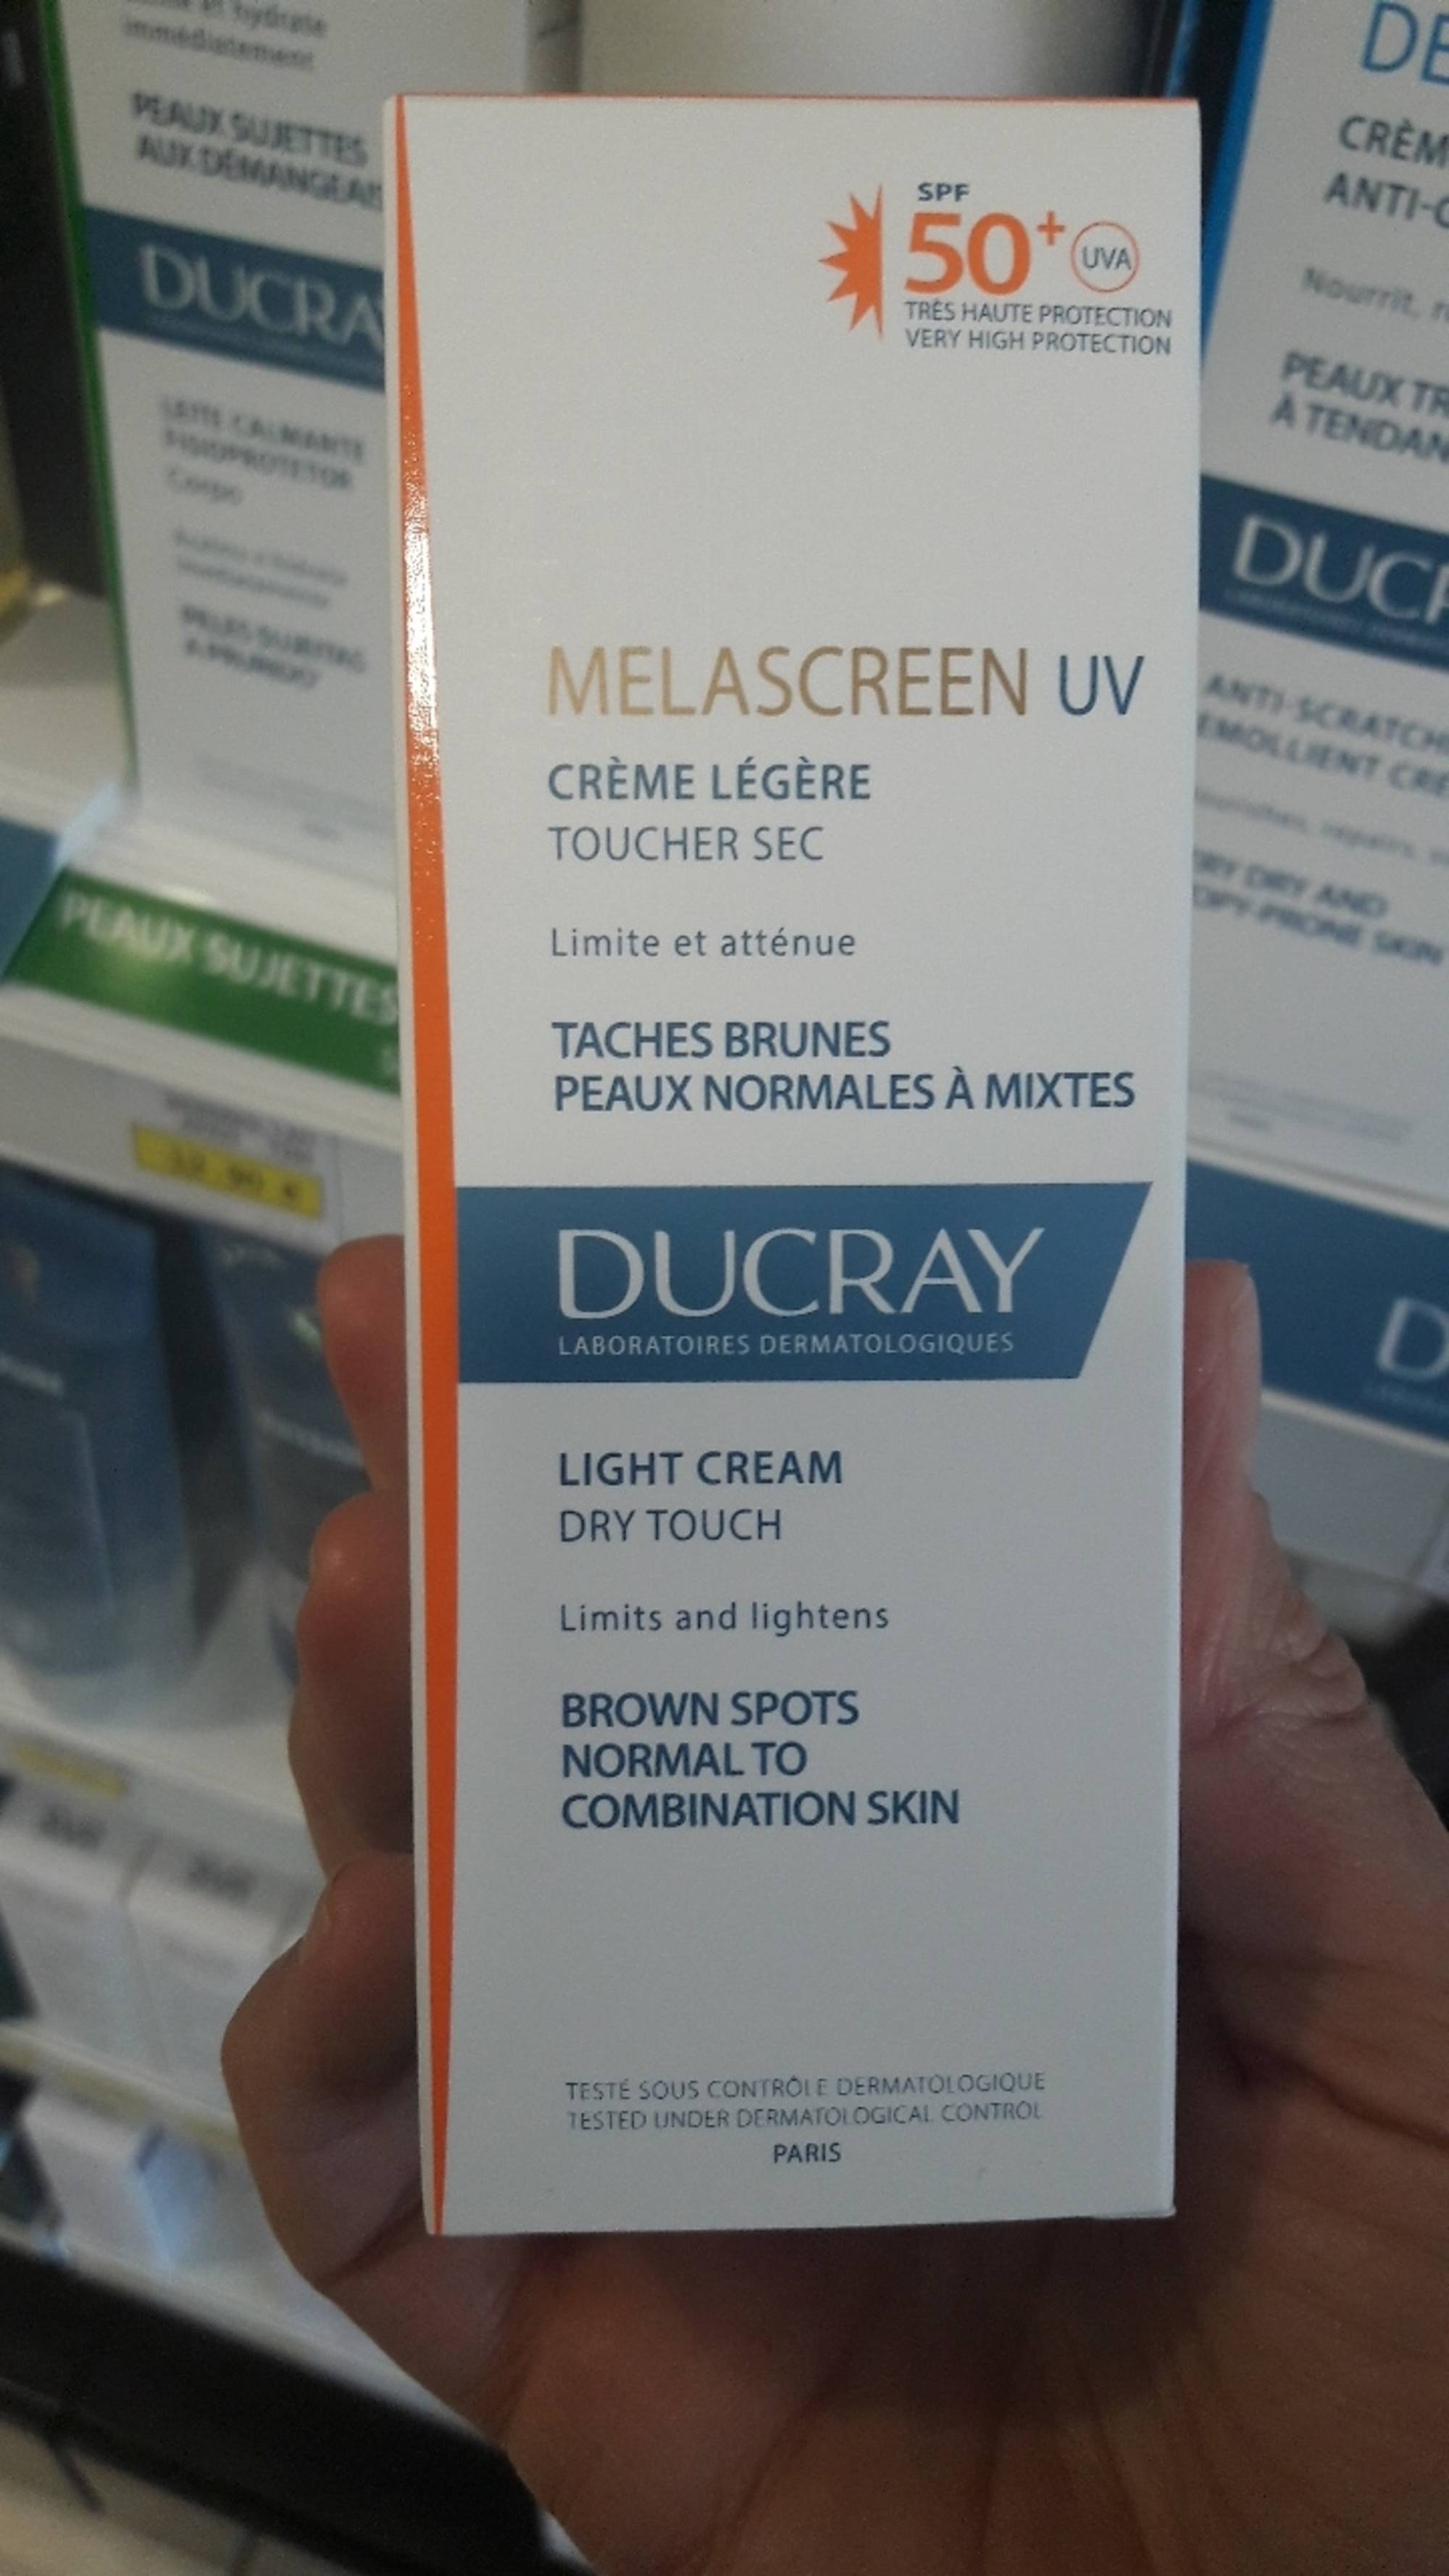 DUCRAY - Melascreen UV - Crème légère - Toucher sec - SPF 50+